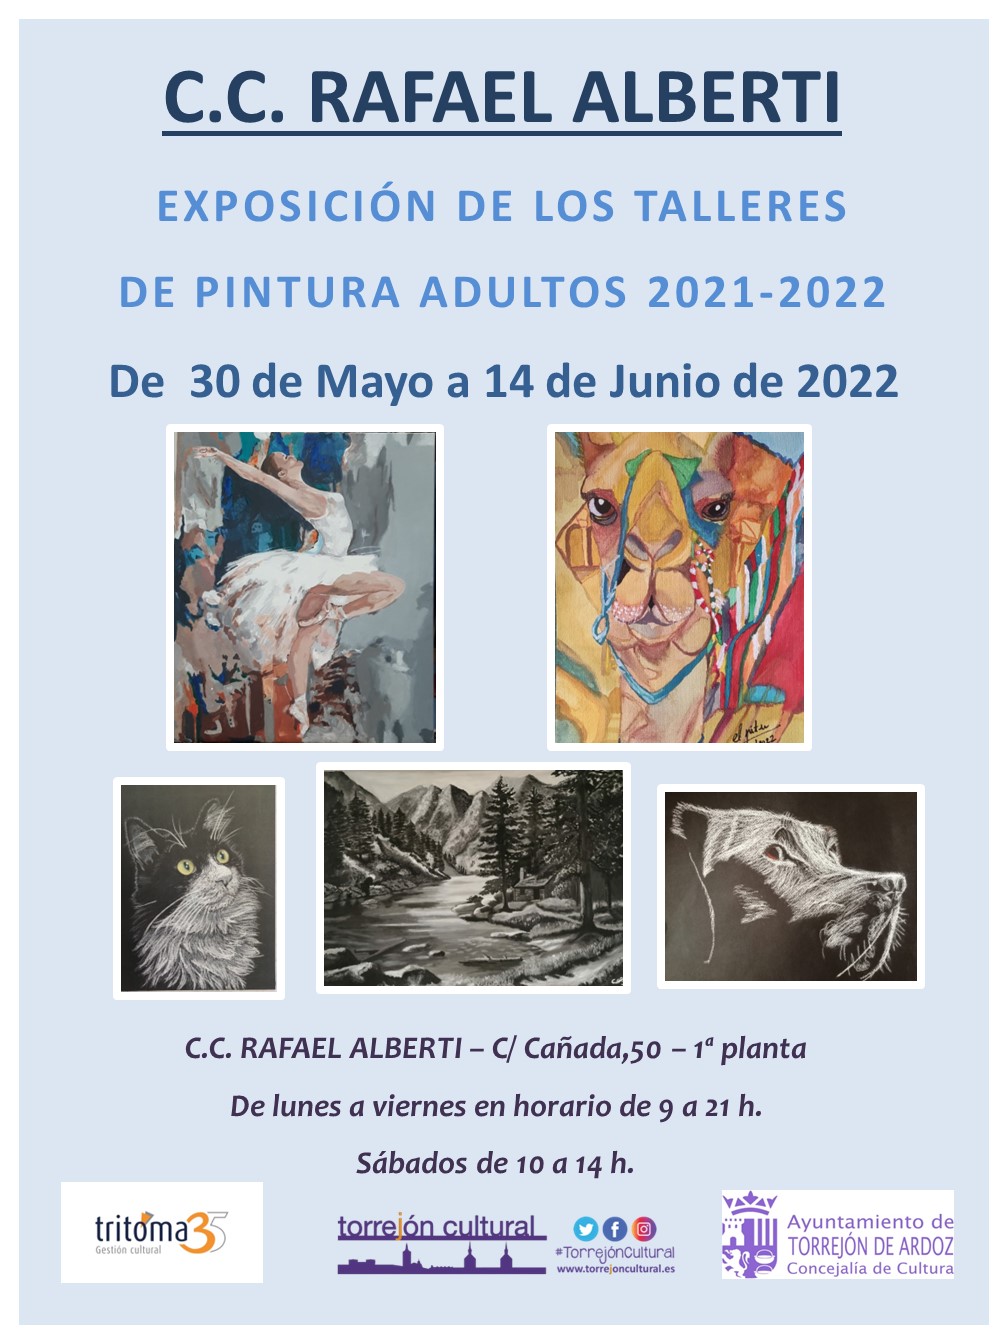 Exposición de los talleres de pintura de adultos del CC Rafael Alberti